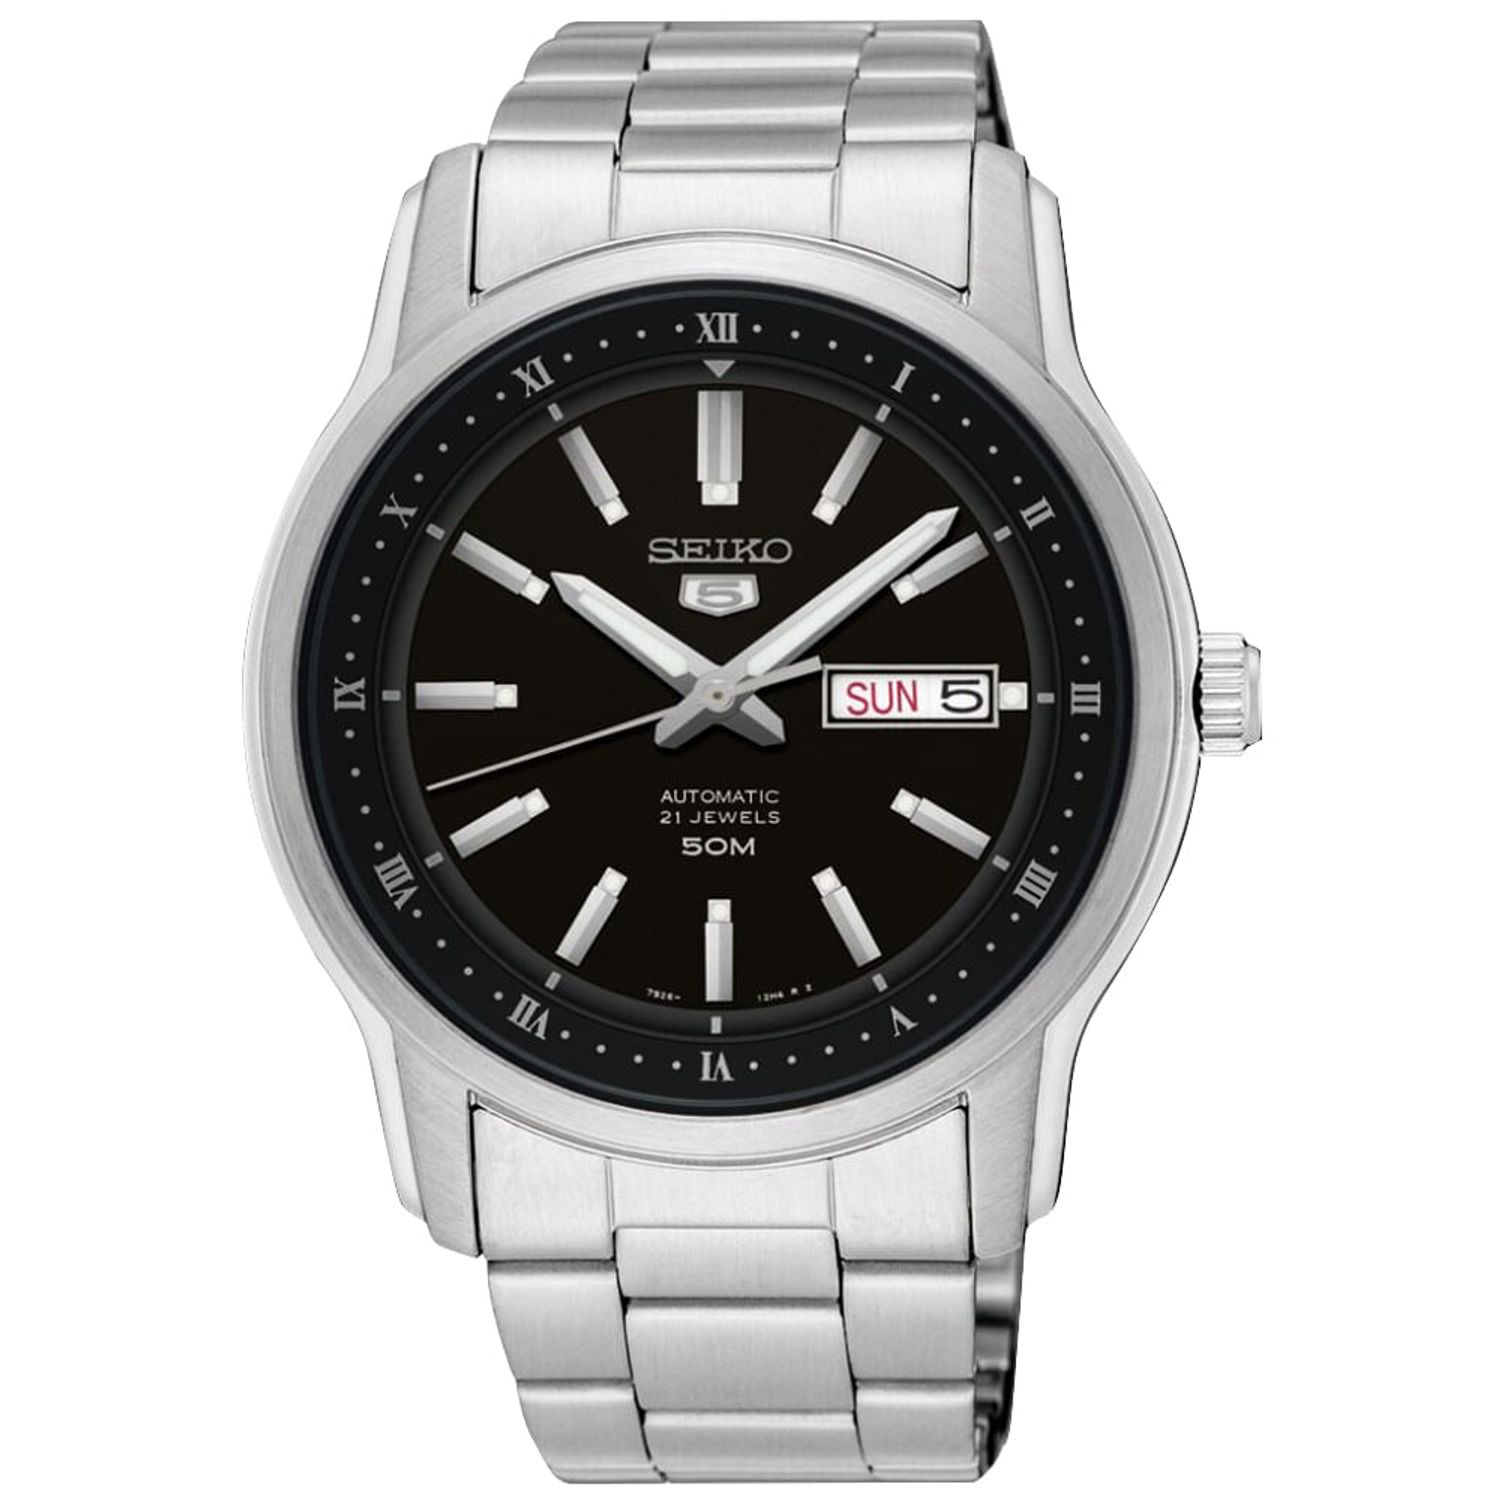 Compra Relojes Seiko 5 online • Entrega rápida •